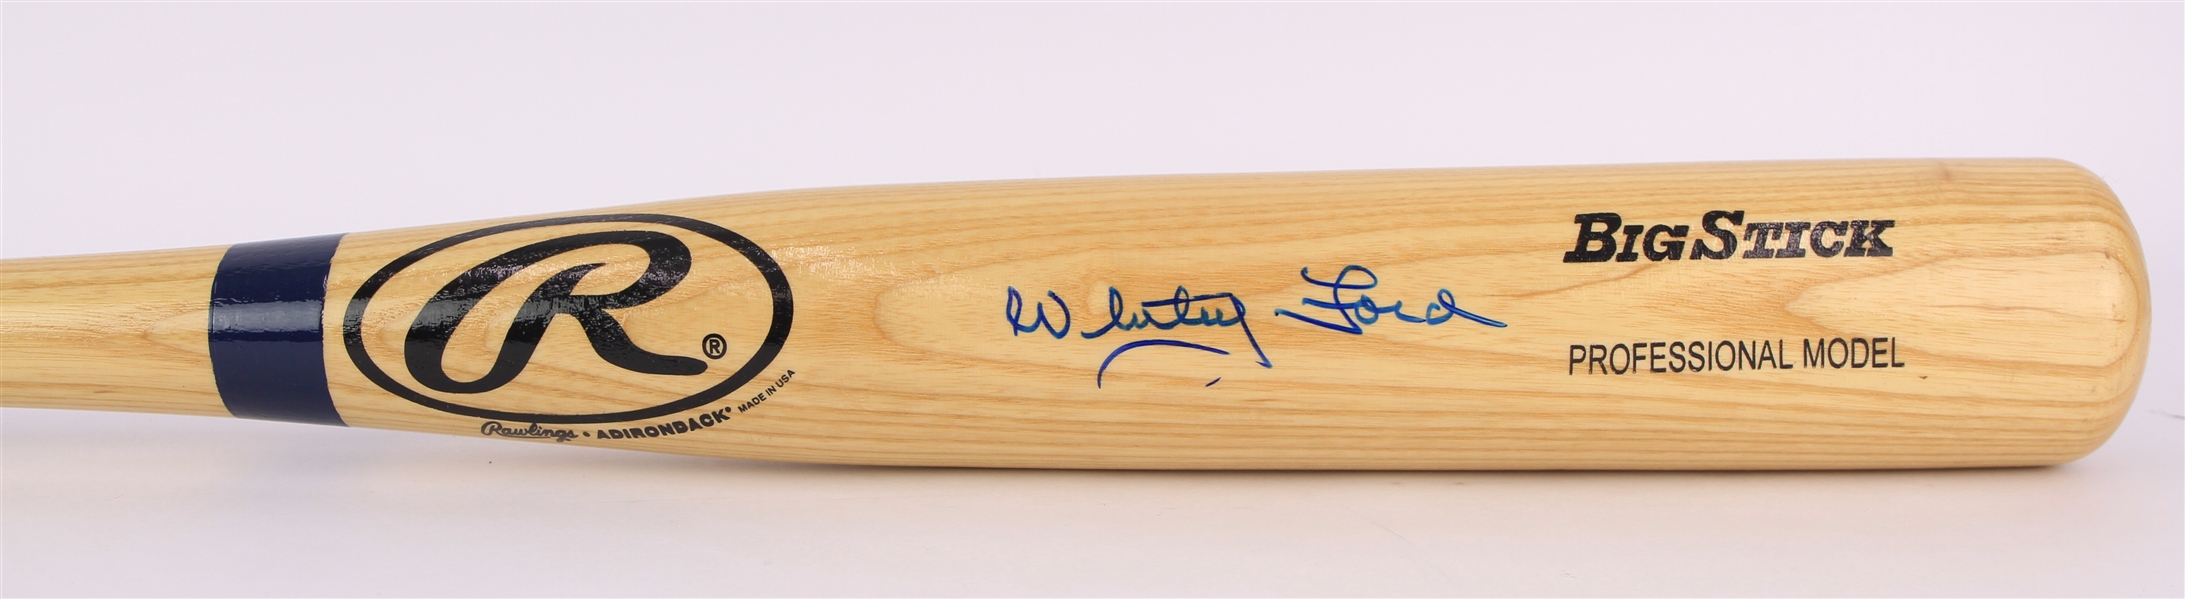 2001 Whitey Ford New York Yankees Signed Rawlings Adirondack Bat (JSA)